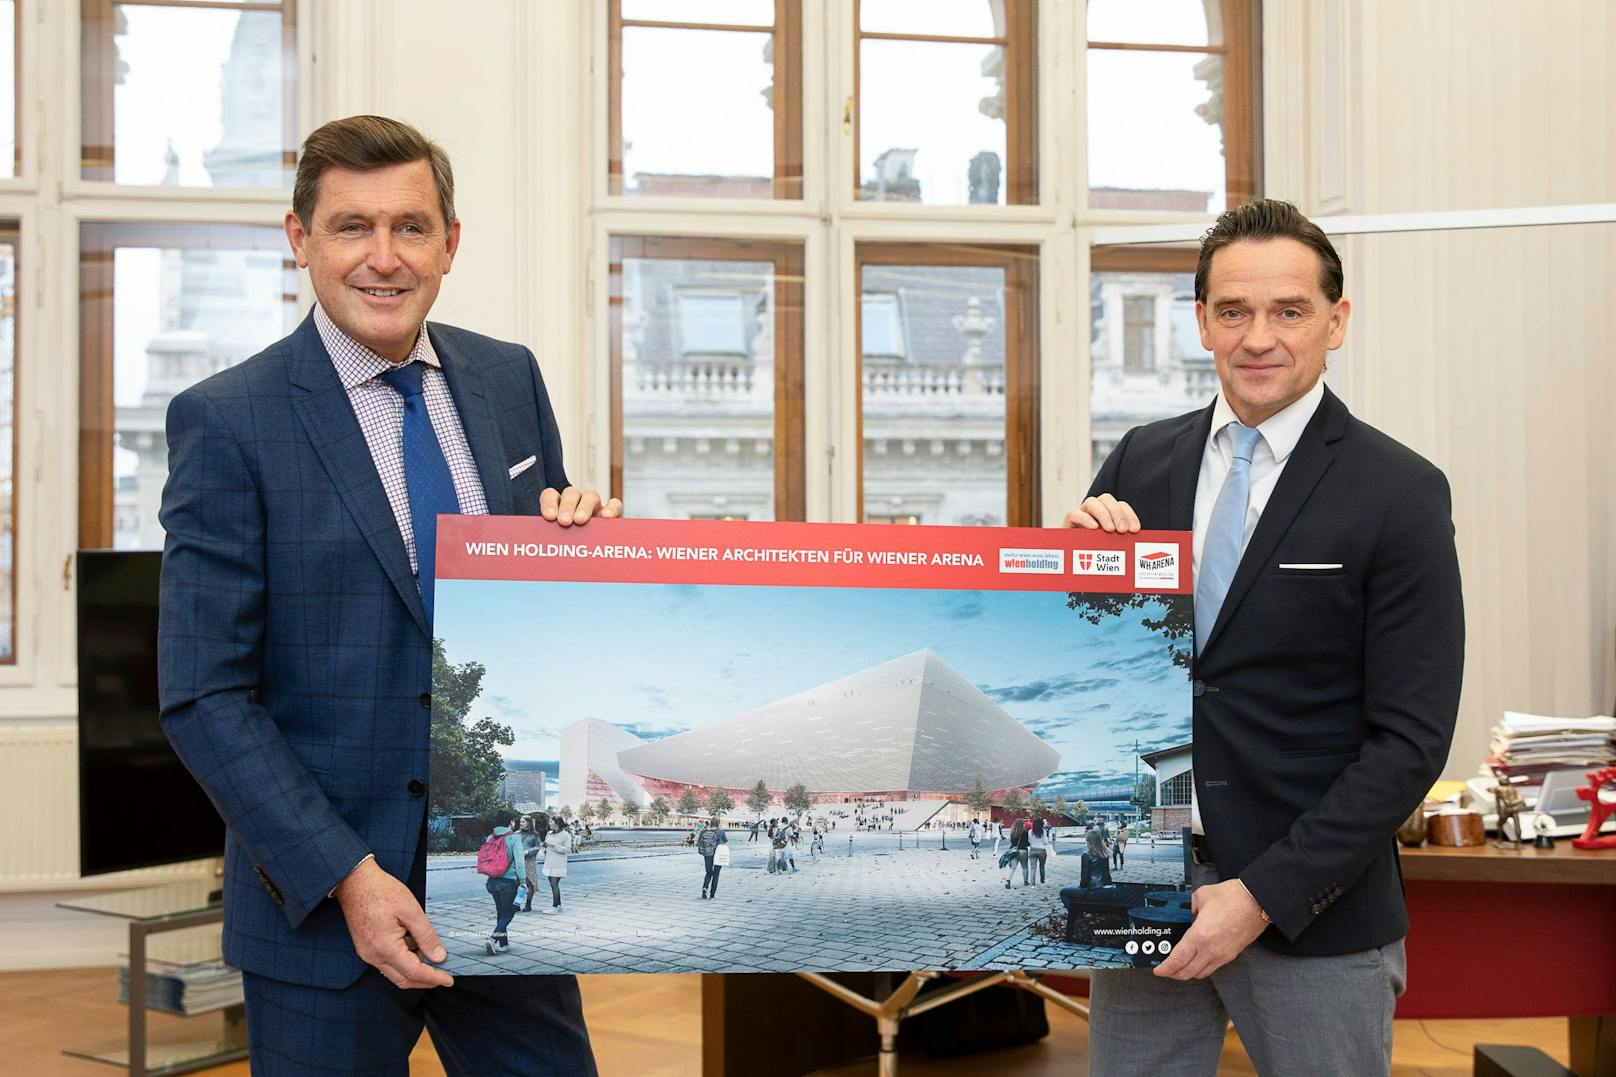 Wirtschaftsstadtrat Peter Hanke (SPÖ, li.) und Wien Holding-Geschäftsführer Kurt Gollowitzer präsentieren das Siegerprojekt für Wiens neue Mega-Arena.